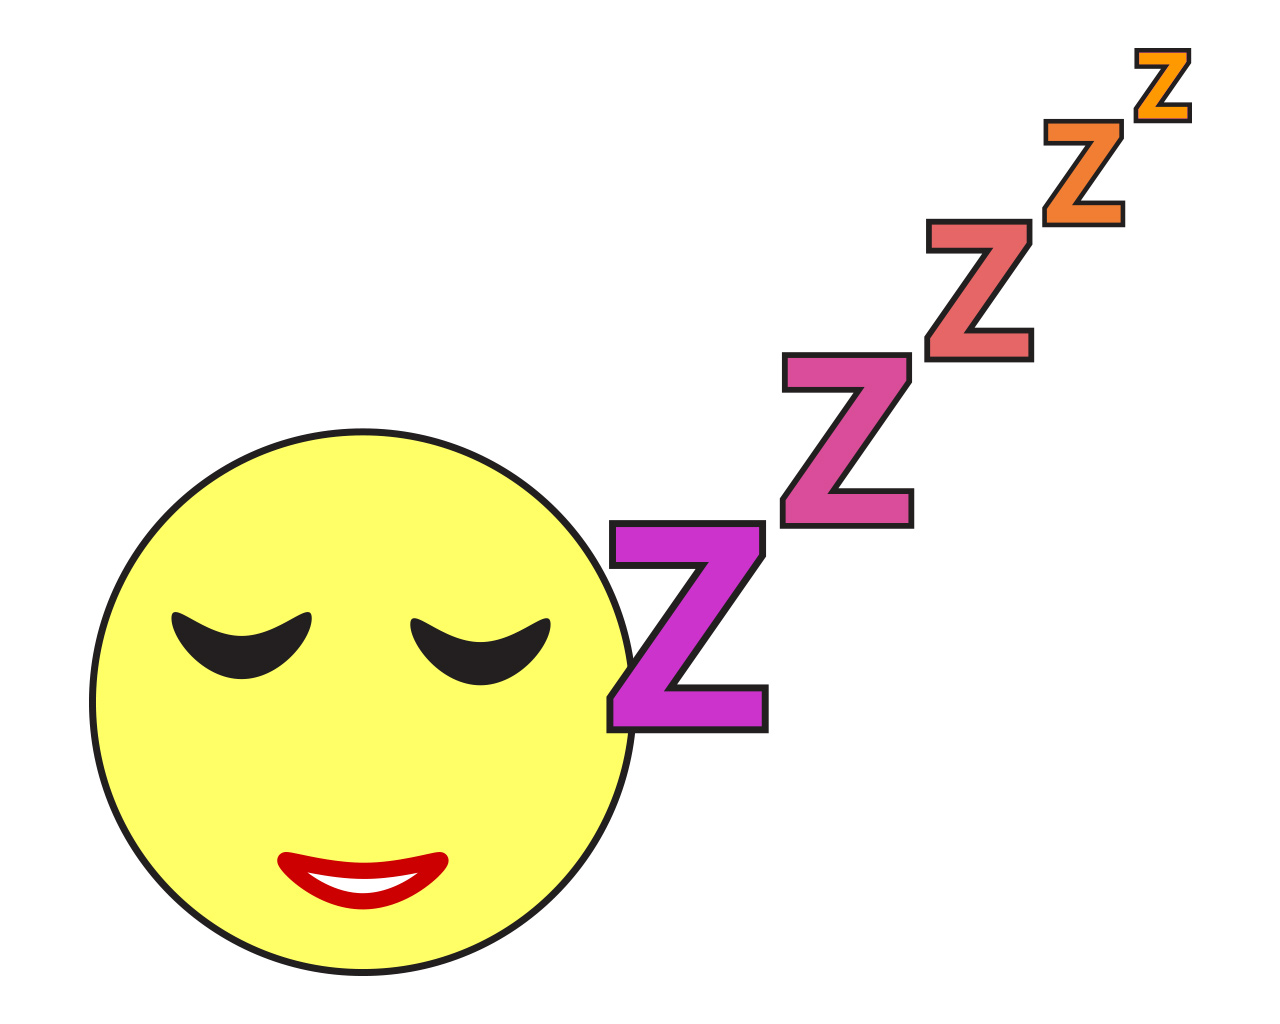 Na slici je smile koji spava što je ilustrirano s pet slova Z koji su napisani kao niz eksponenata na bazi Z.